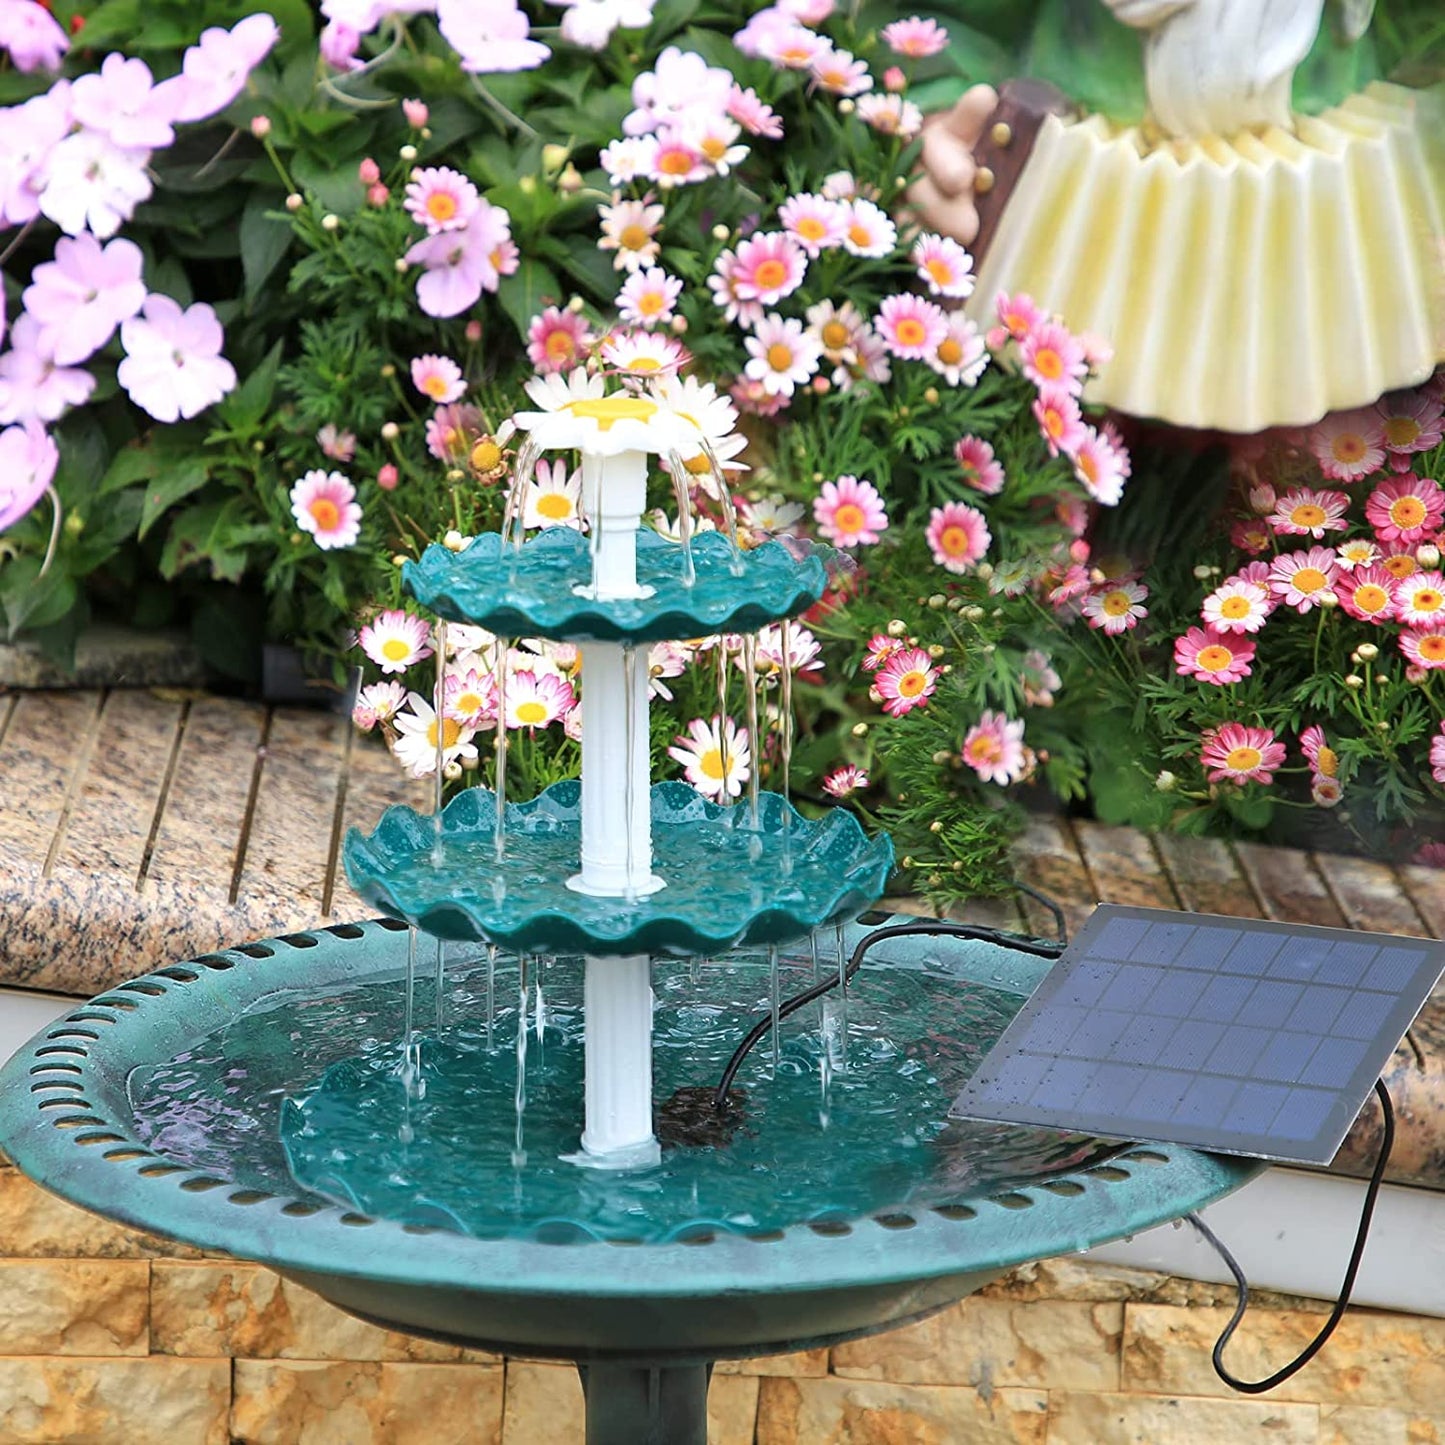 3 Tiered Bird Bath with 3W Solar Pump - DIY Solar Fountain Detachable and Suitable for Bird Bath, Garden Decoration